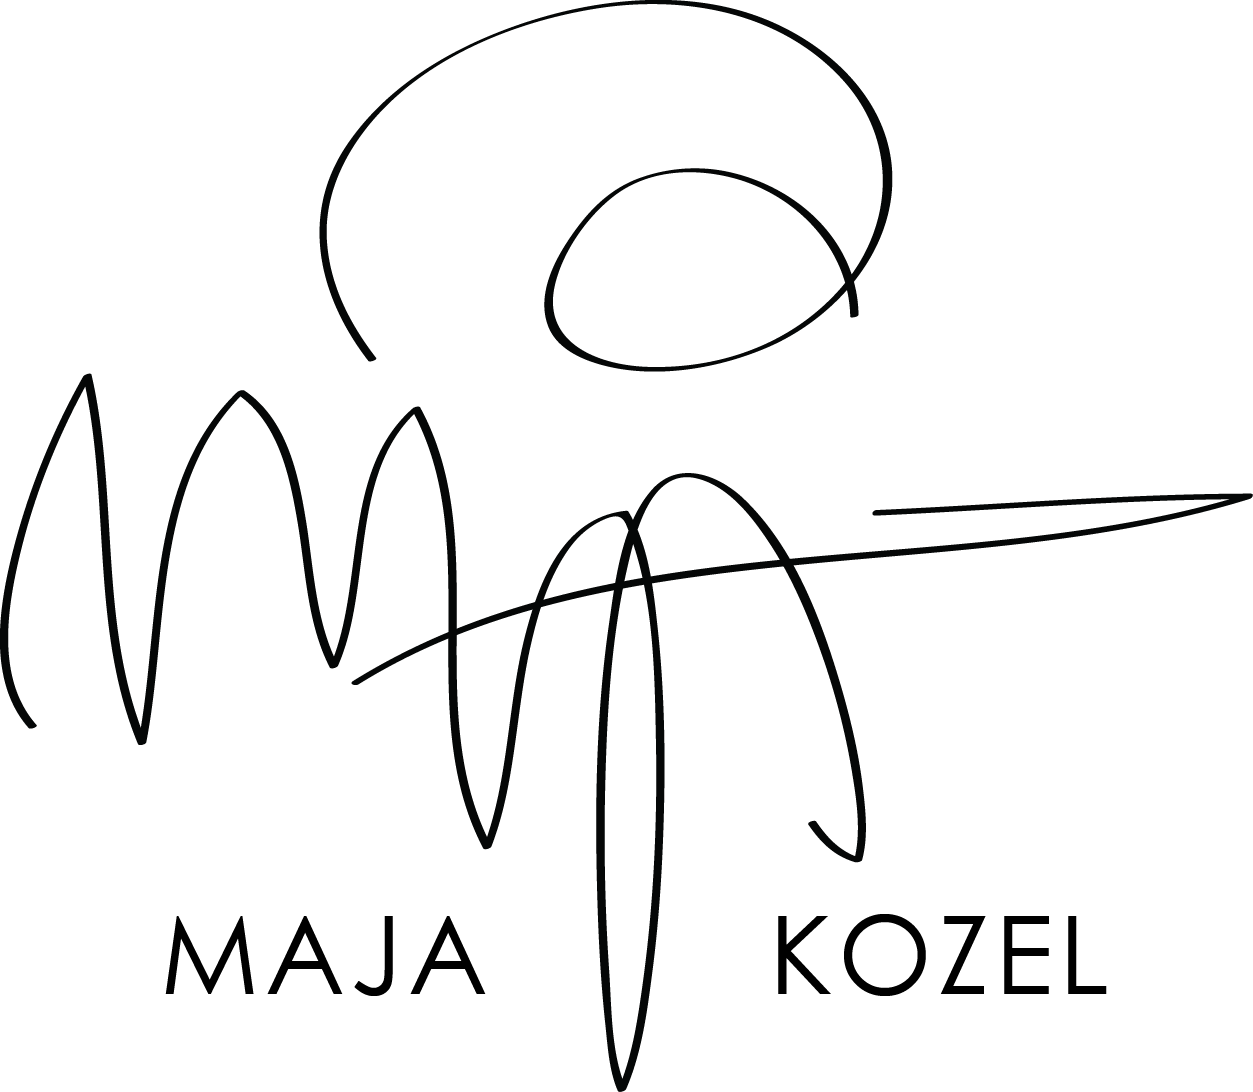 Maja Kozel.png